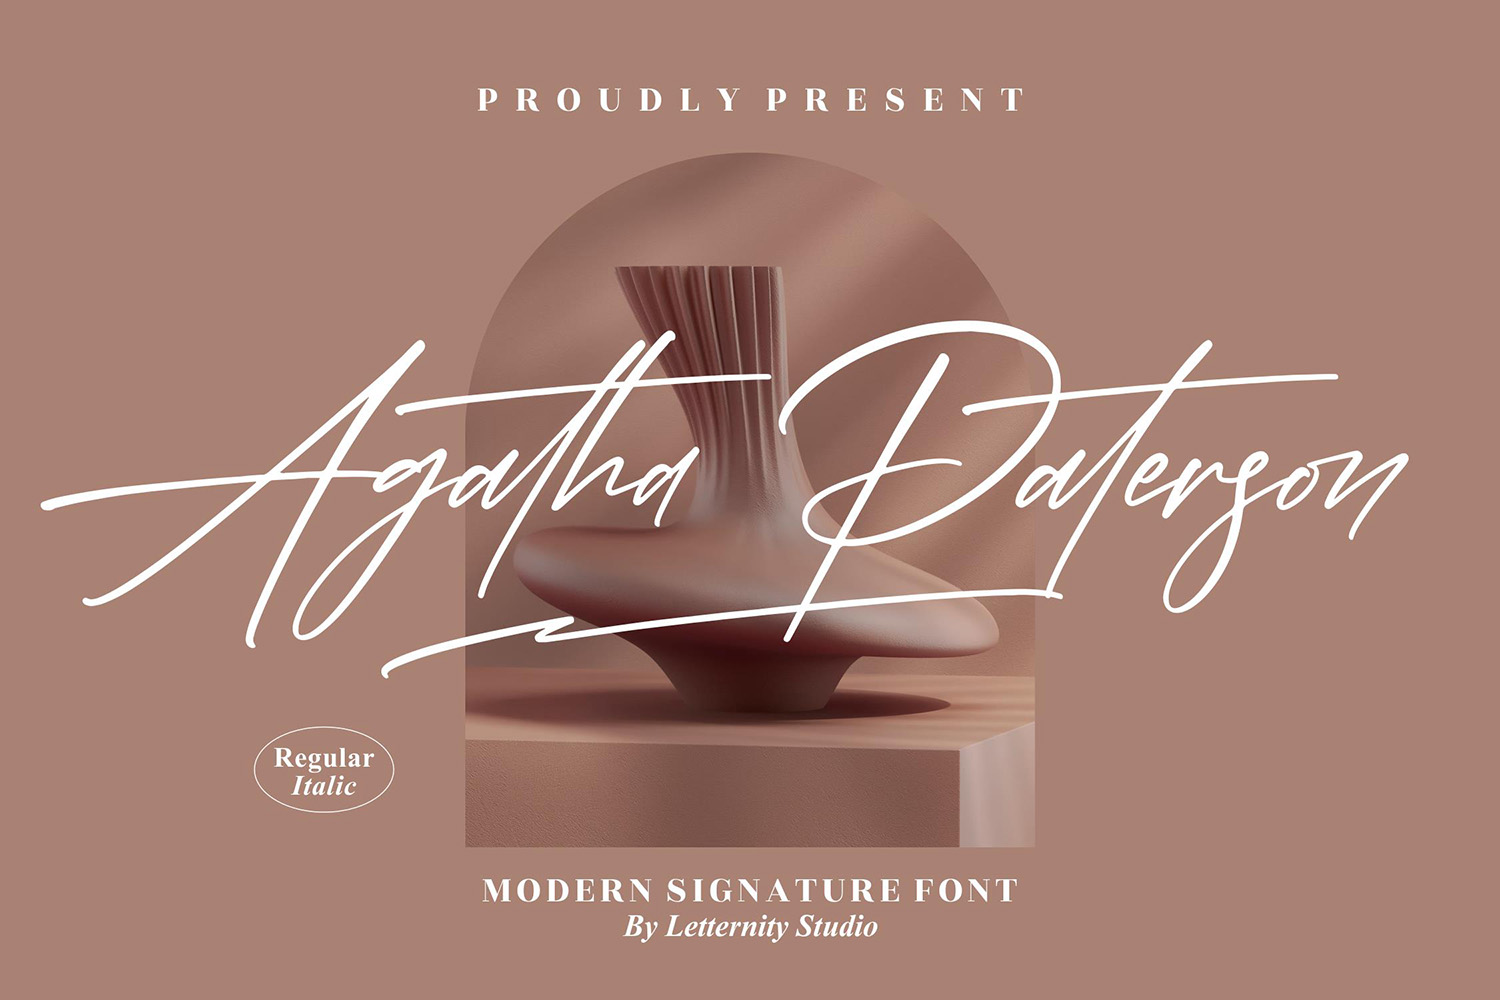 Agatha Paterson Free Font